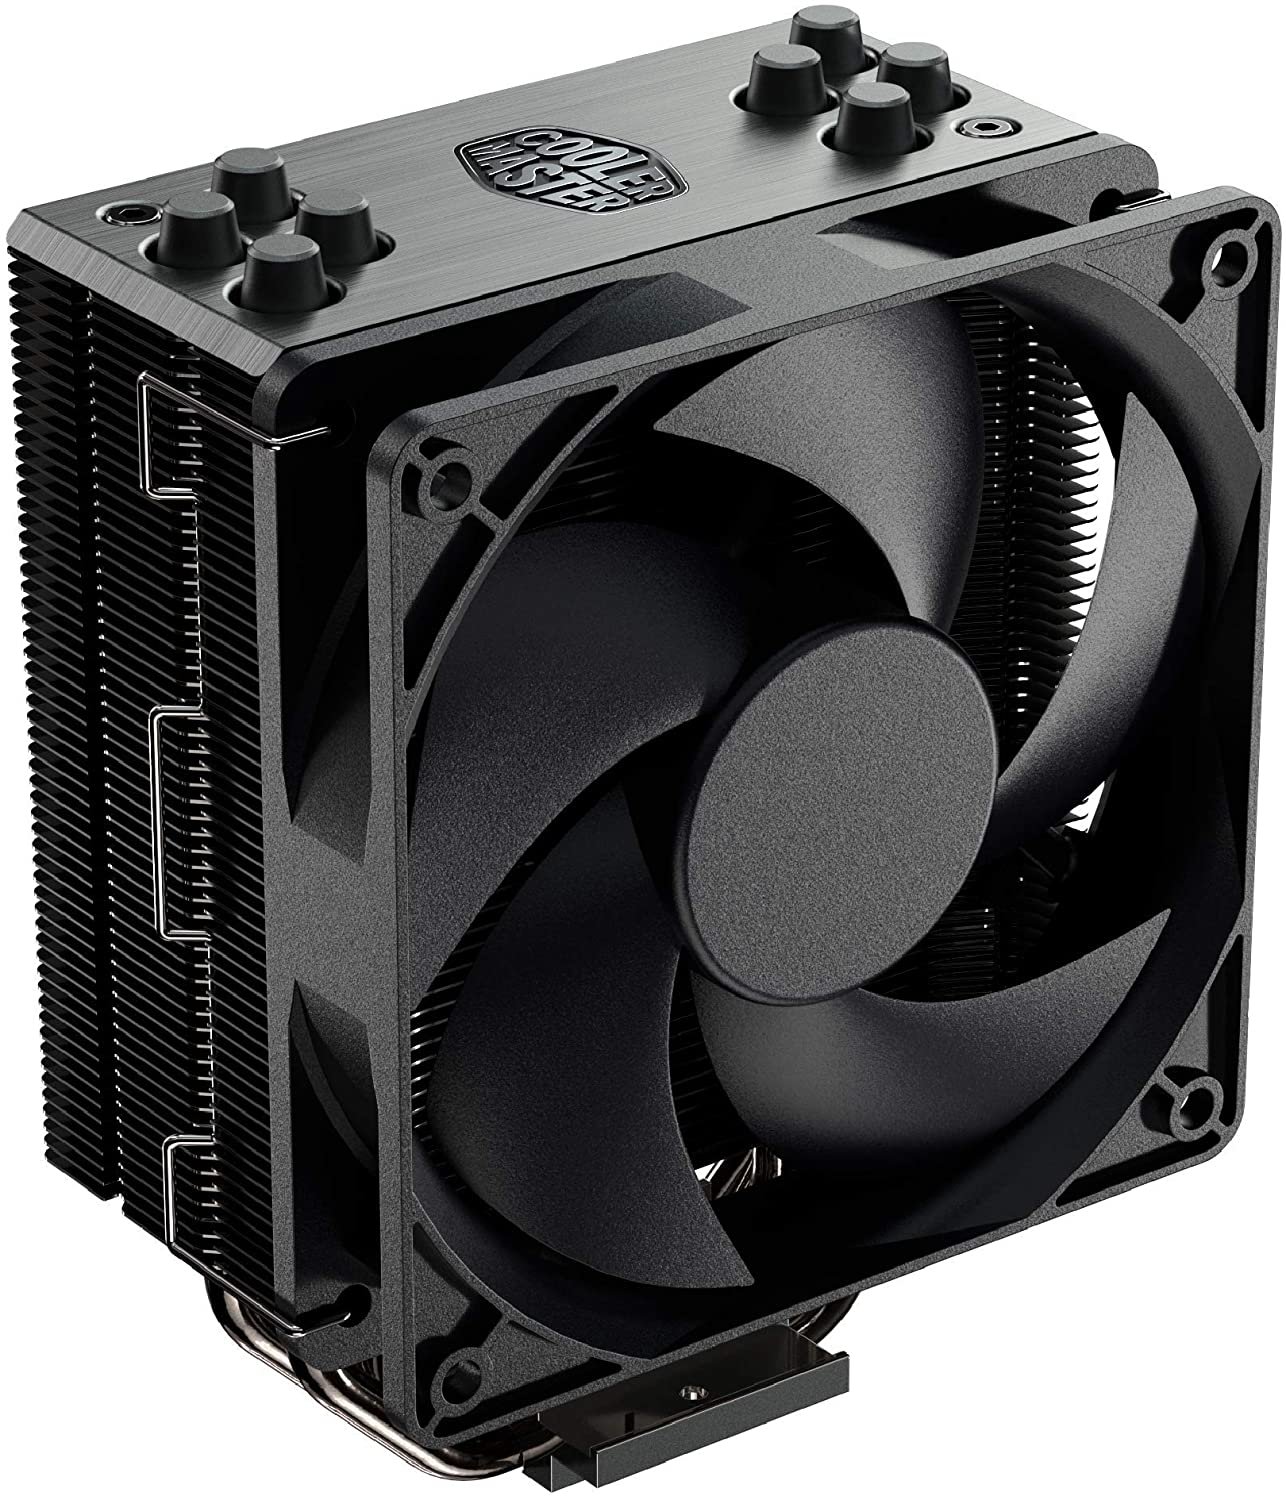 2 Cooler - Best $800 PC Build 2021